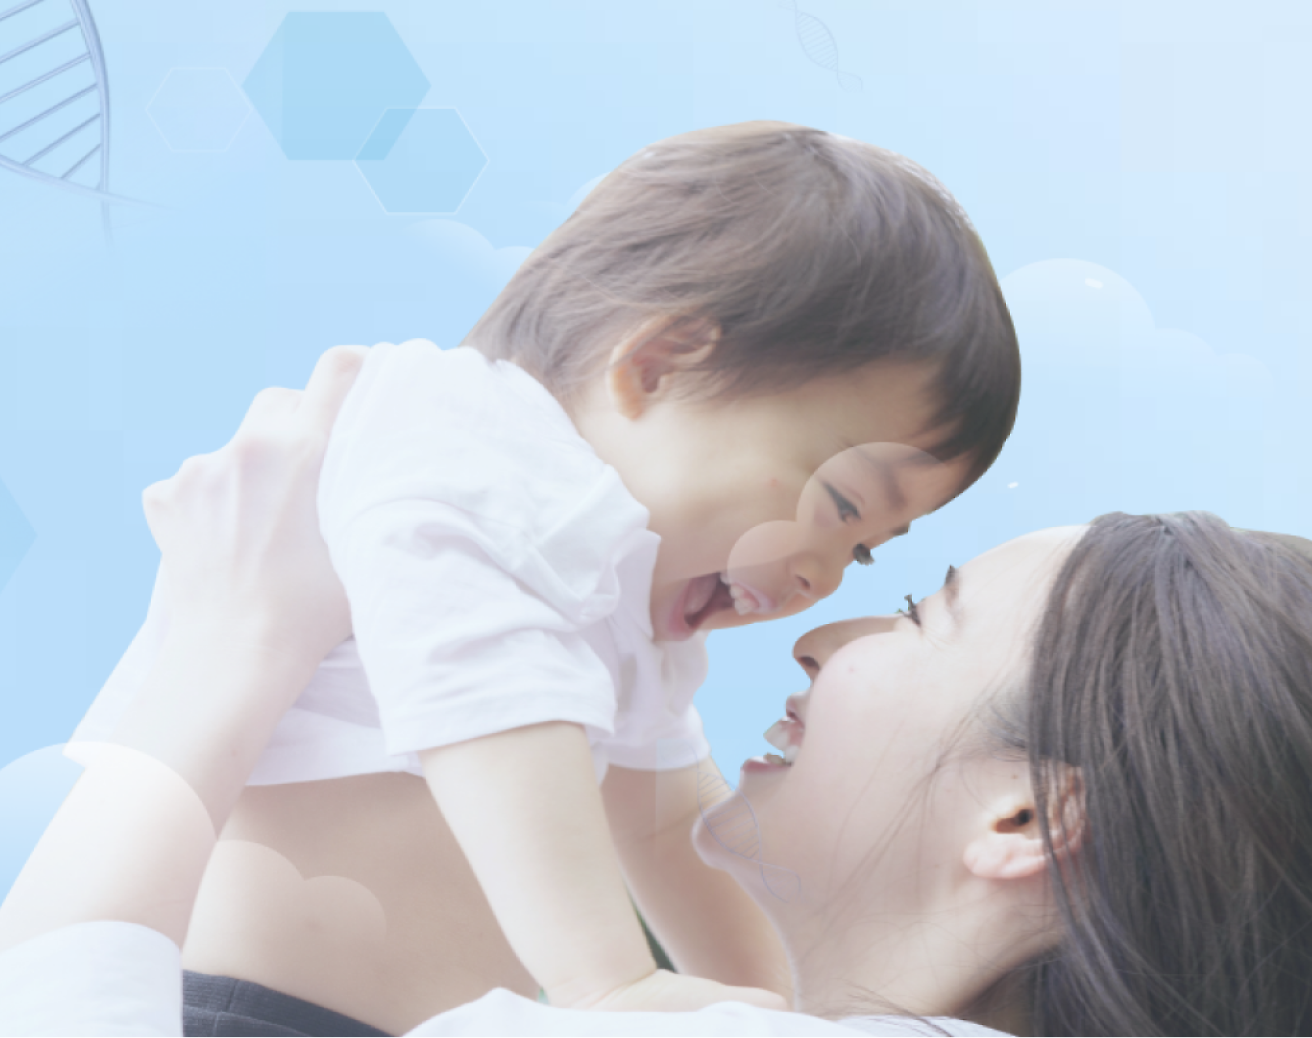 Un niño alegre sostenido en el aire por su madre, ambos sonriendo sobre un fondo azul suave con gráficos claros.